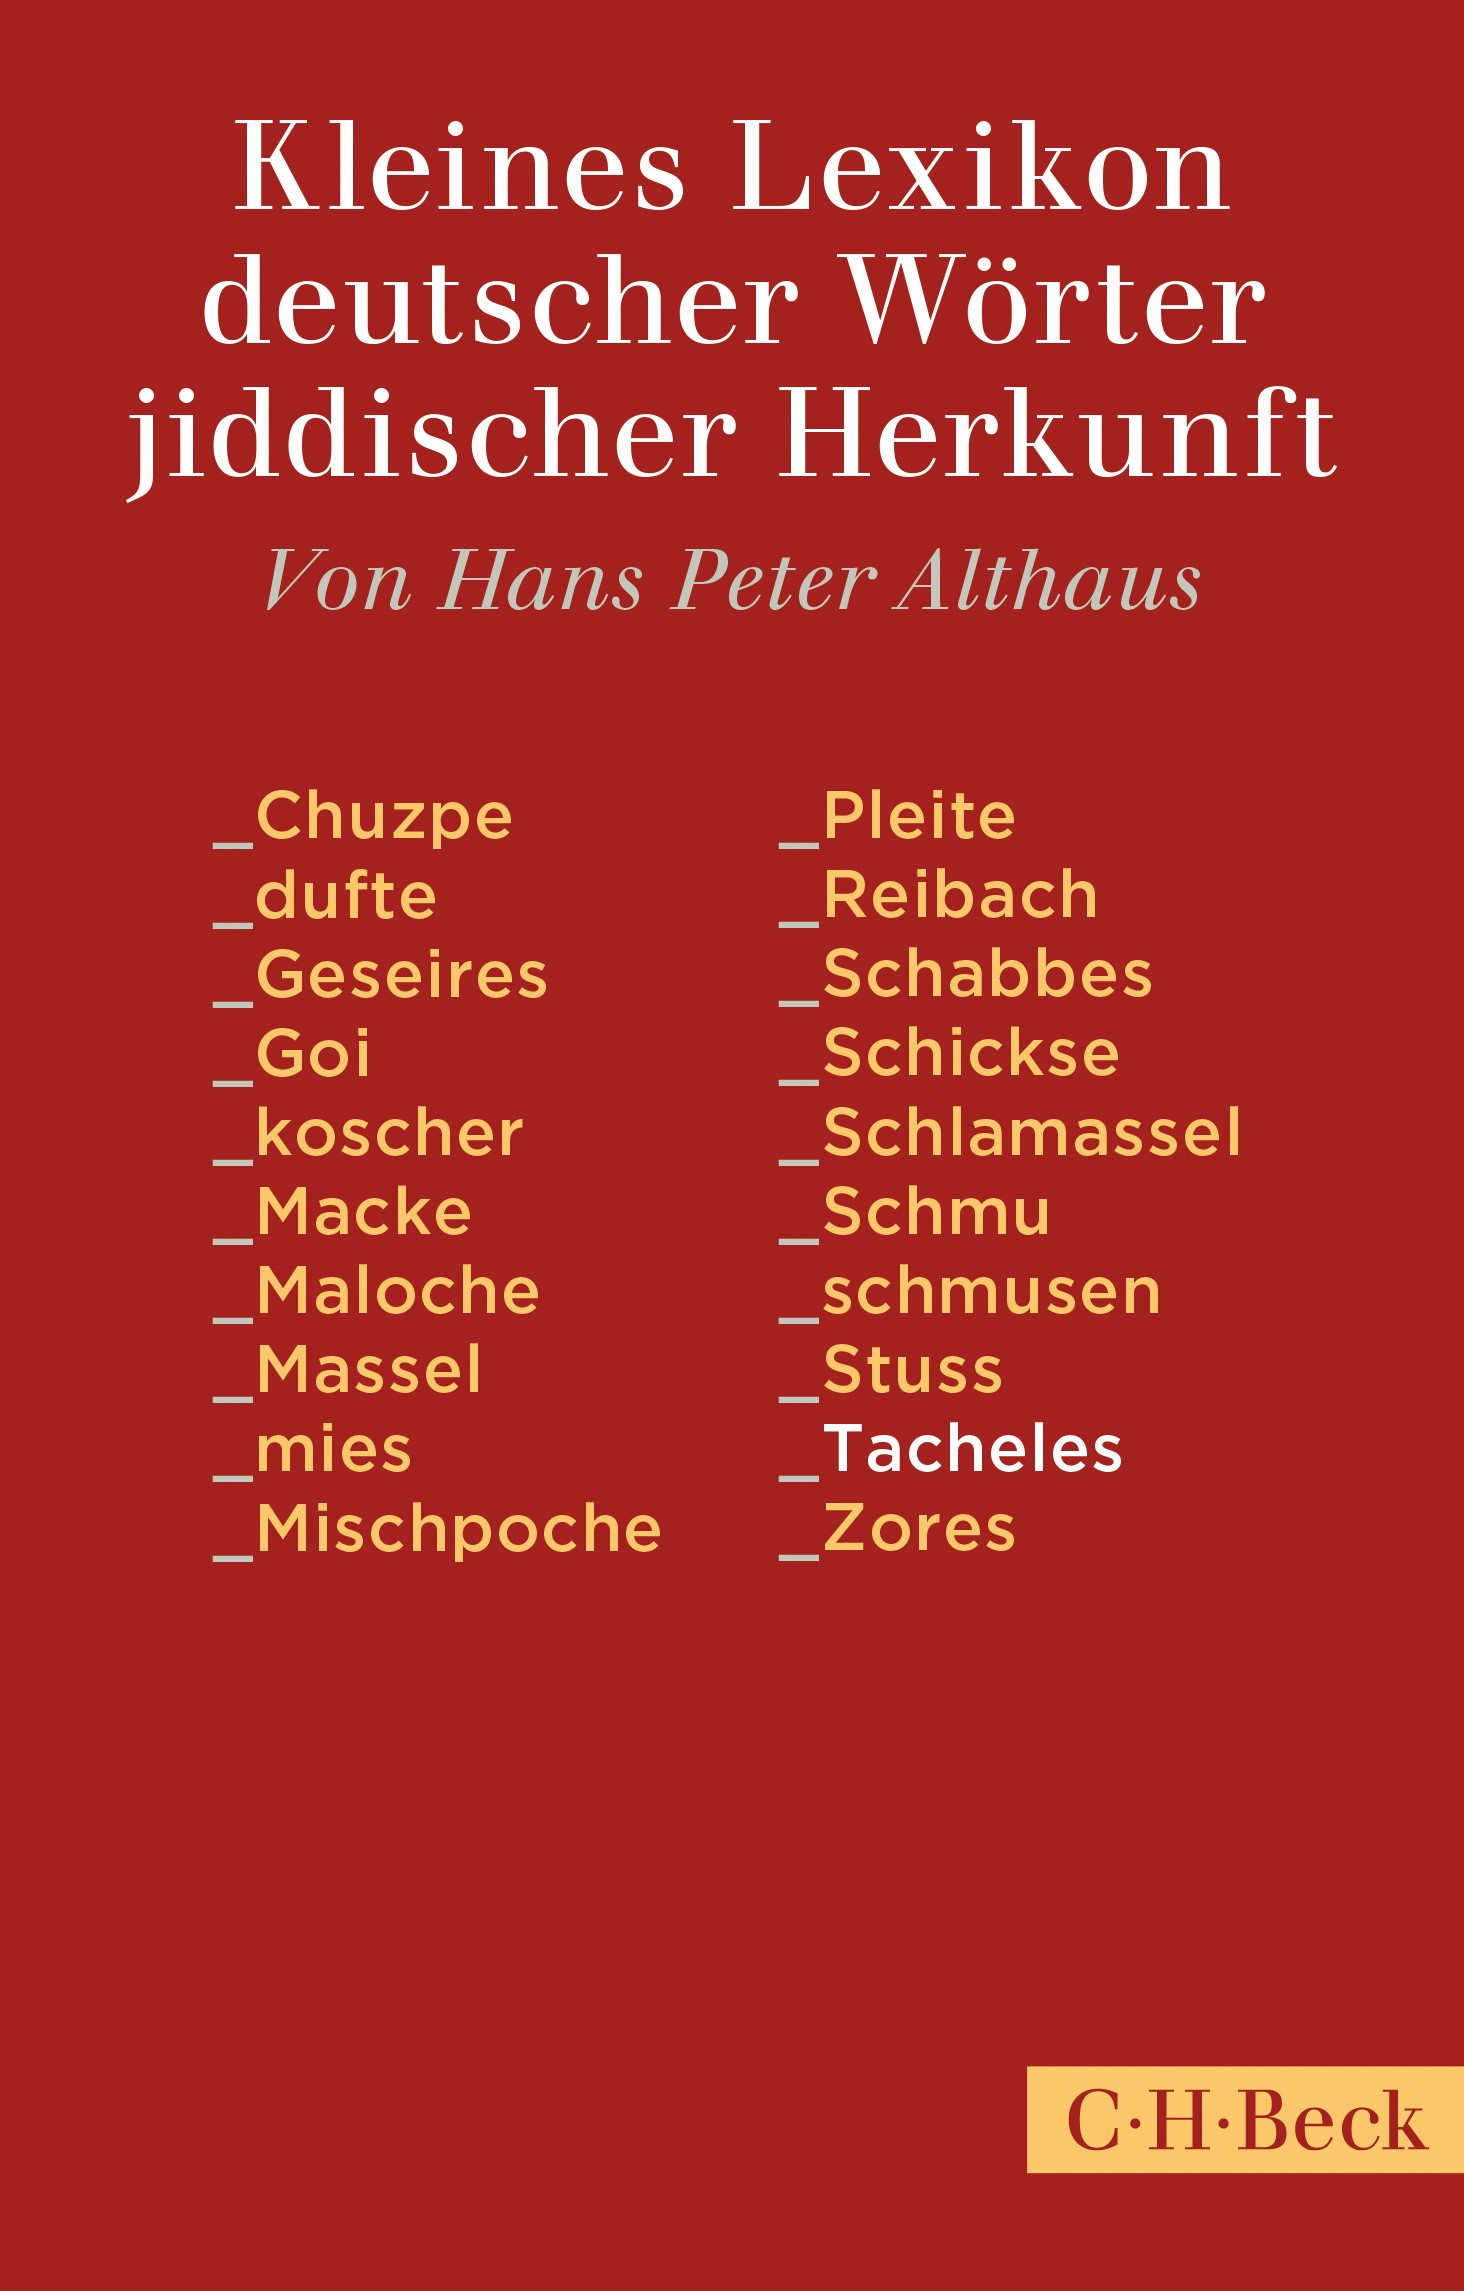 Cover: Althaus, Peter, Kleines Lexikon deutscher Wörter jiddischer Herkunft